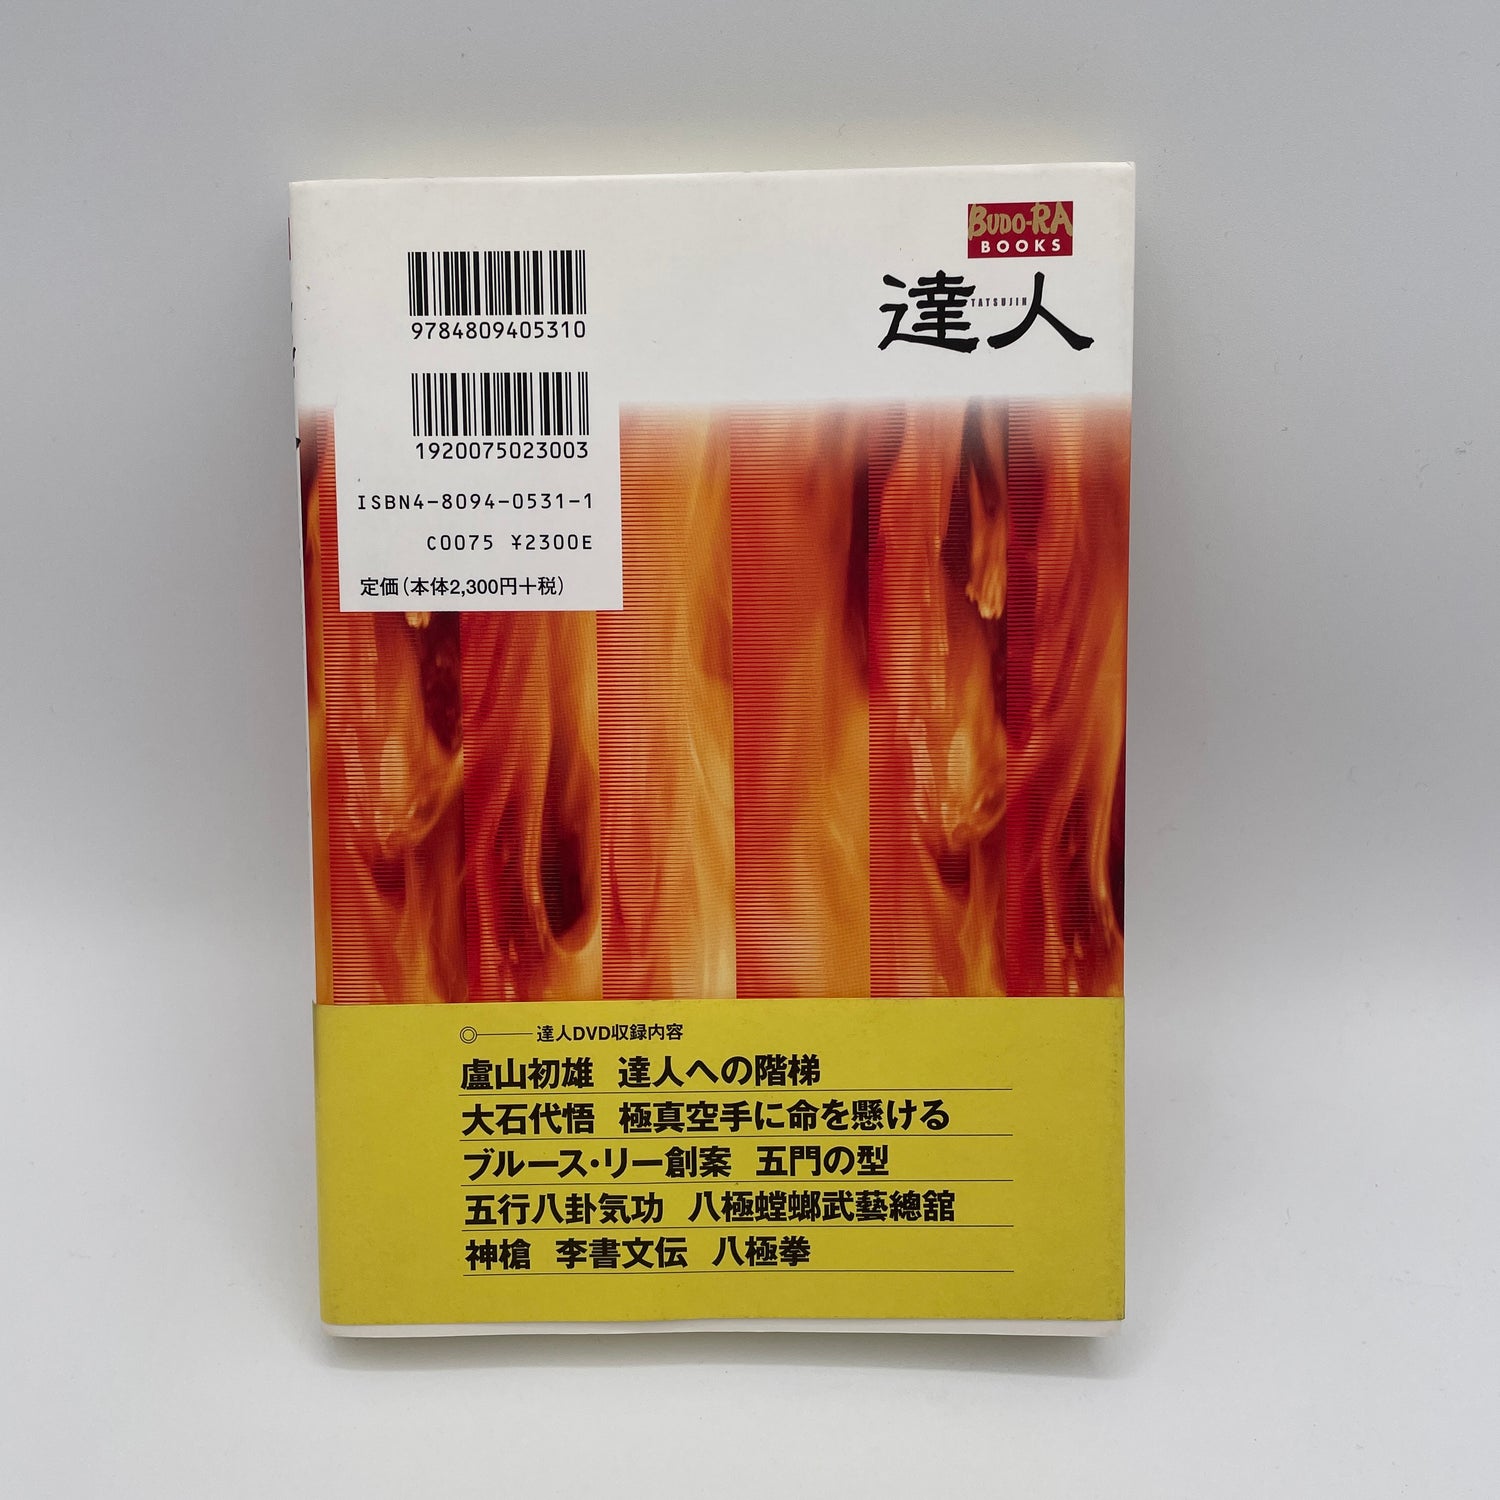 達人 Vol.1 武道の極意を探る者へ 書籍＆DVD（中古）